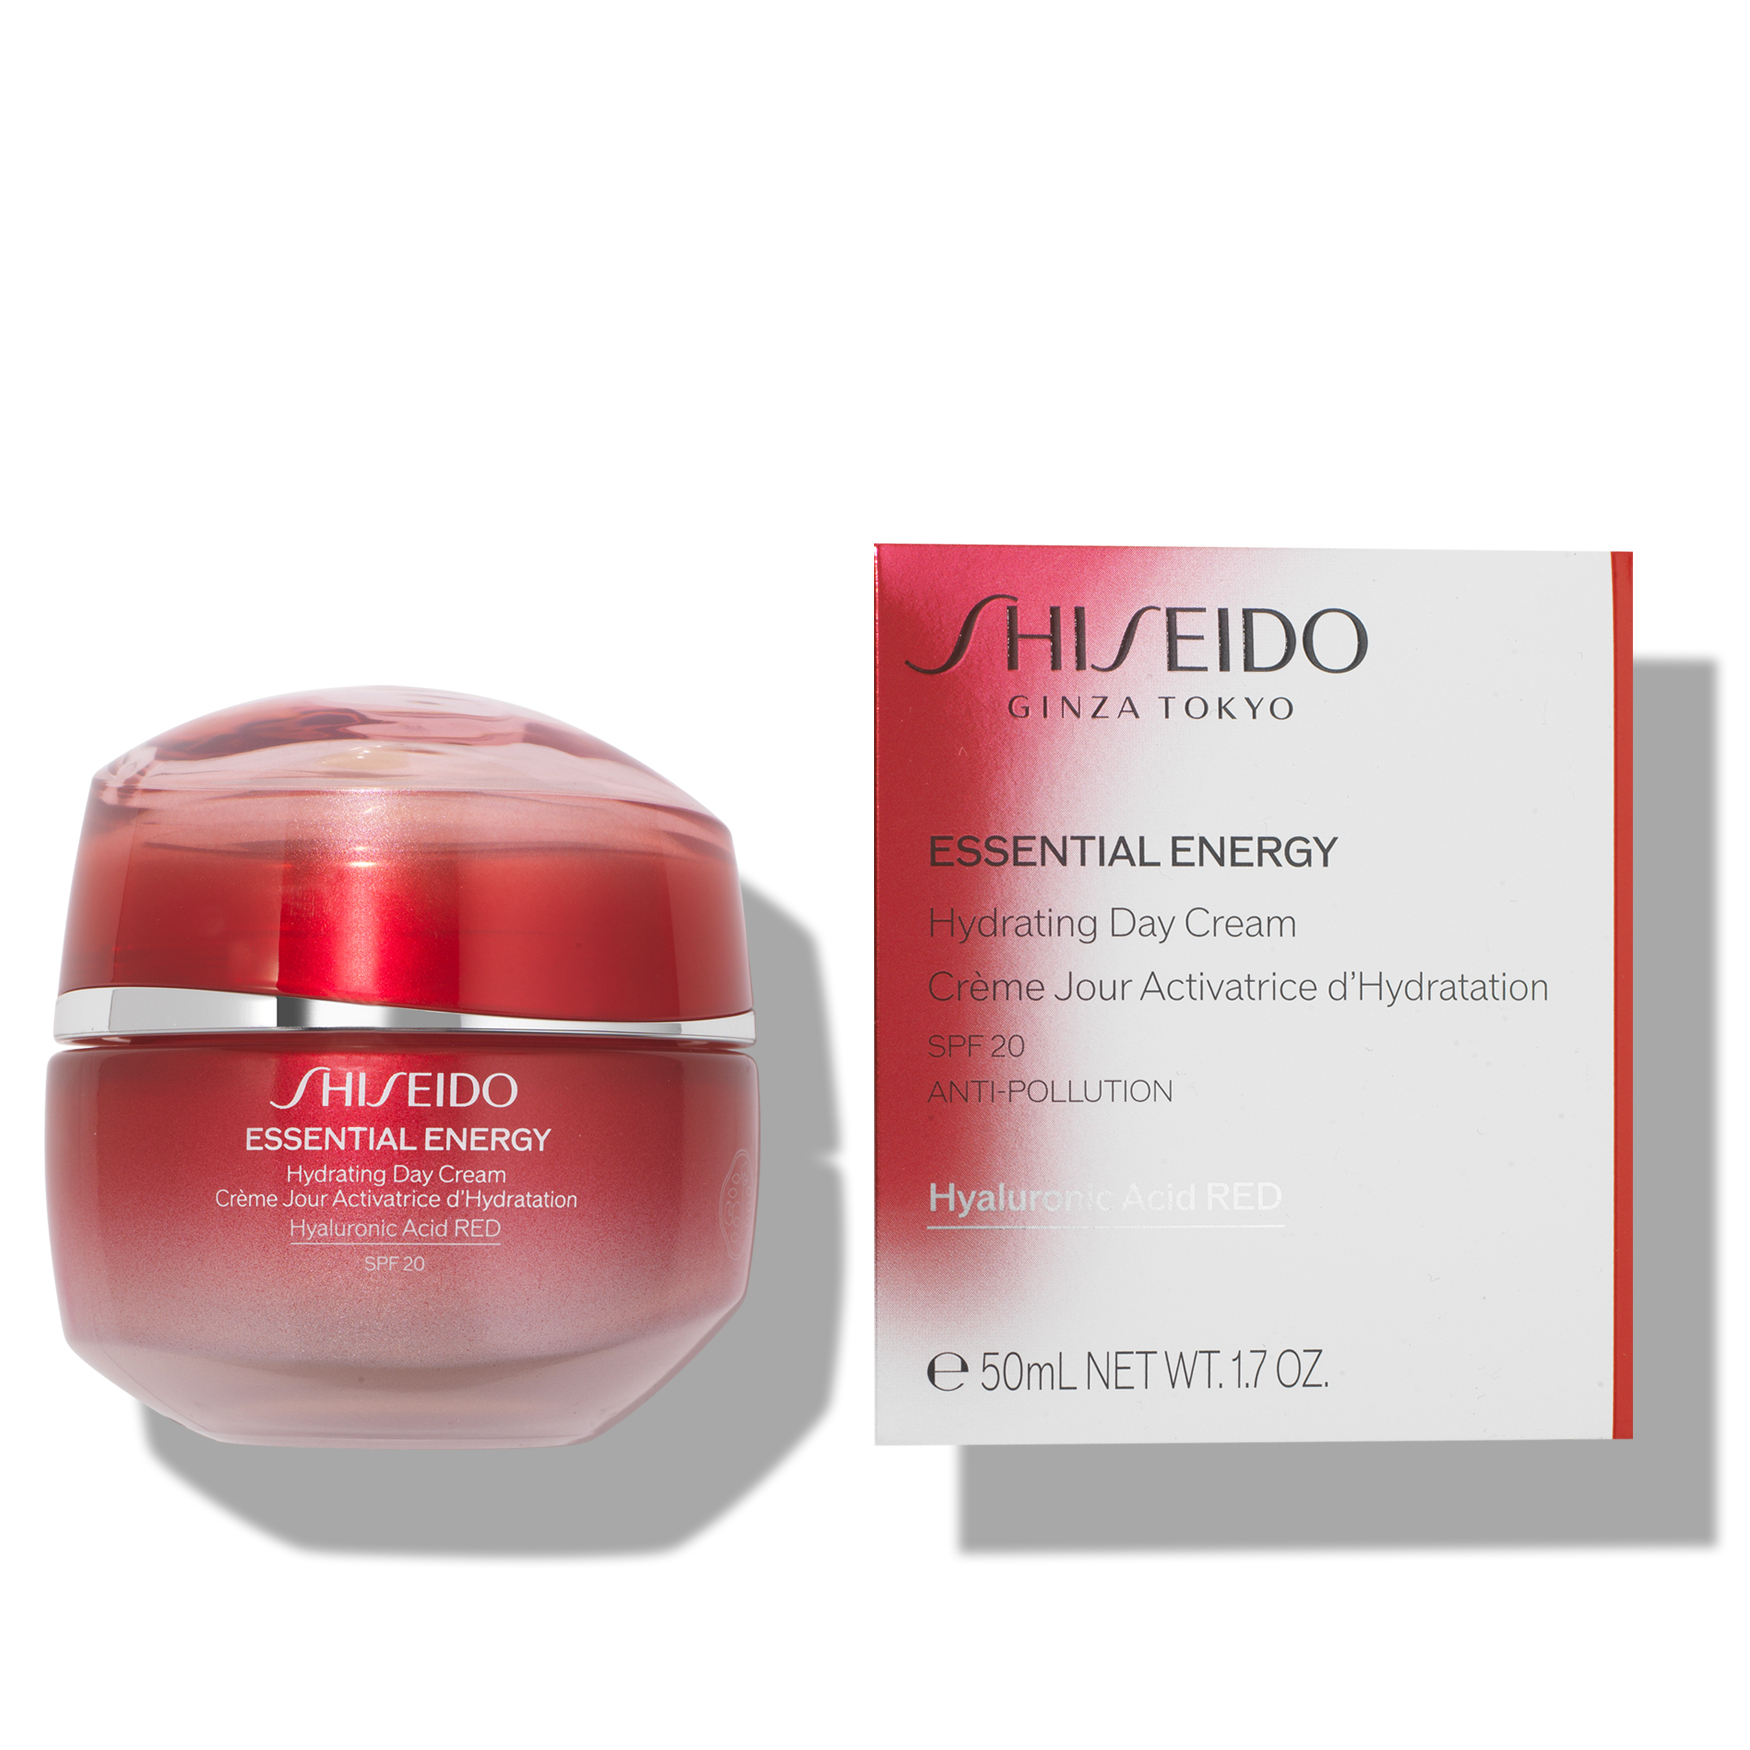 Шисейдо Essential Energy Hydrating Cream. Shiseido Essential Energy. Крем Shiseido суперувлаж. Shiseido Advanced Essential Energy логотип.